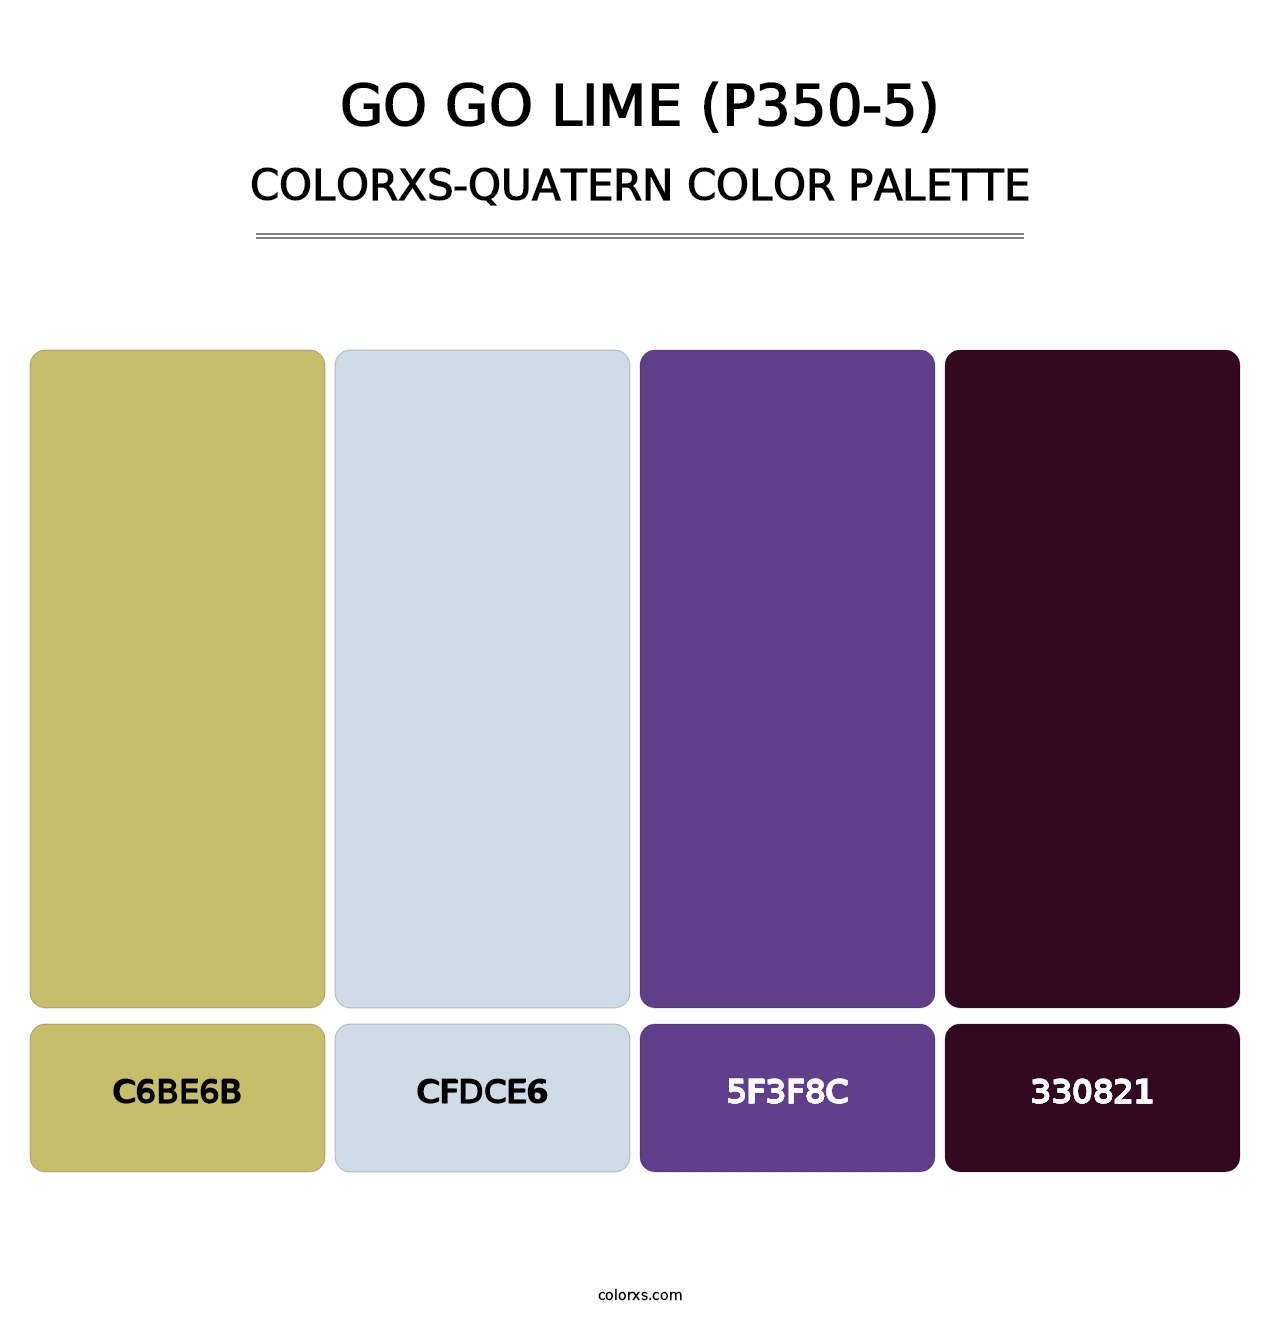 Go Go Lime (P350-5) - Colorxs Quatern Palette